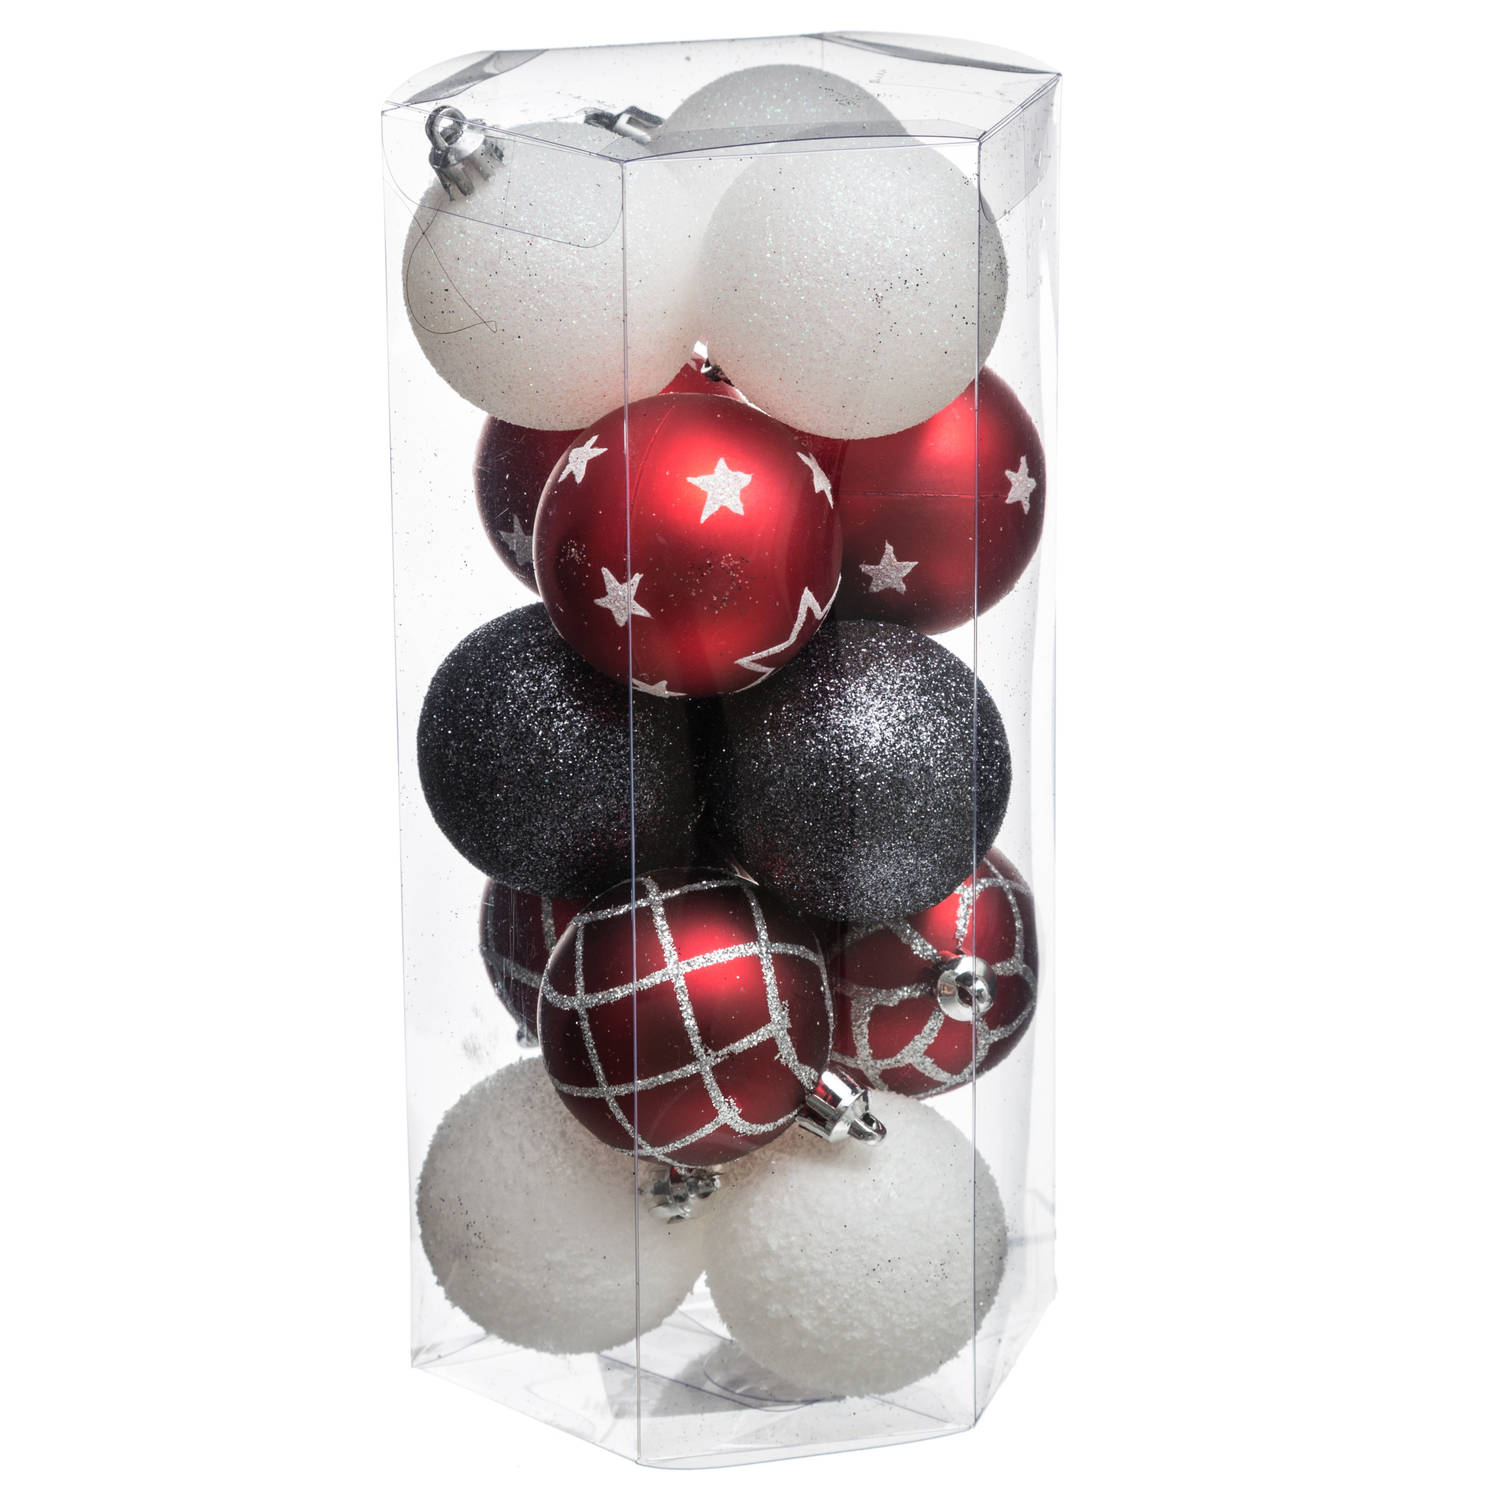 15x stuks kerstballen mix wit/rood/zwart gedecoreerd kunststof 5 cm - Kerstbal